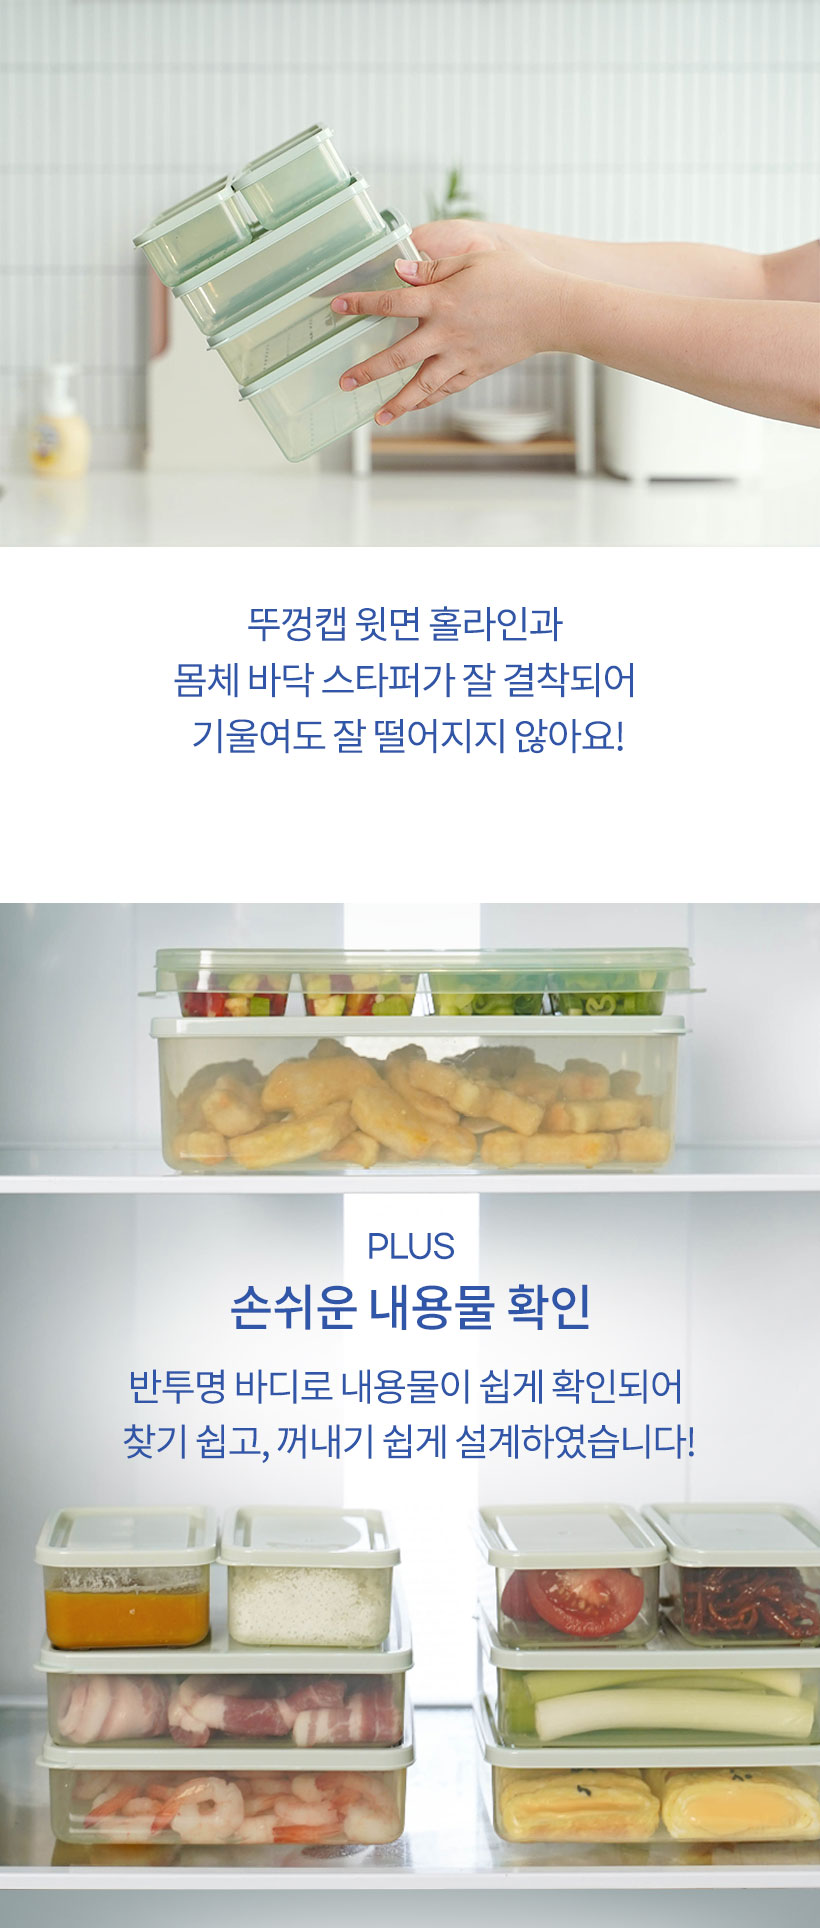 리빙7 냉장고깔끔통(12P)